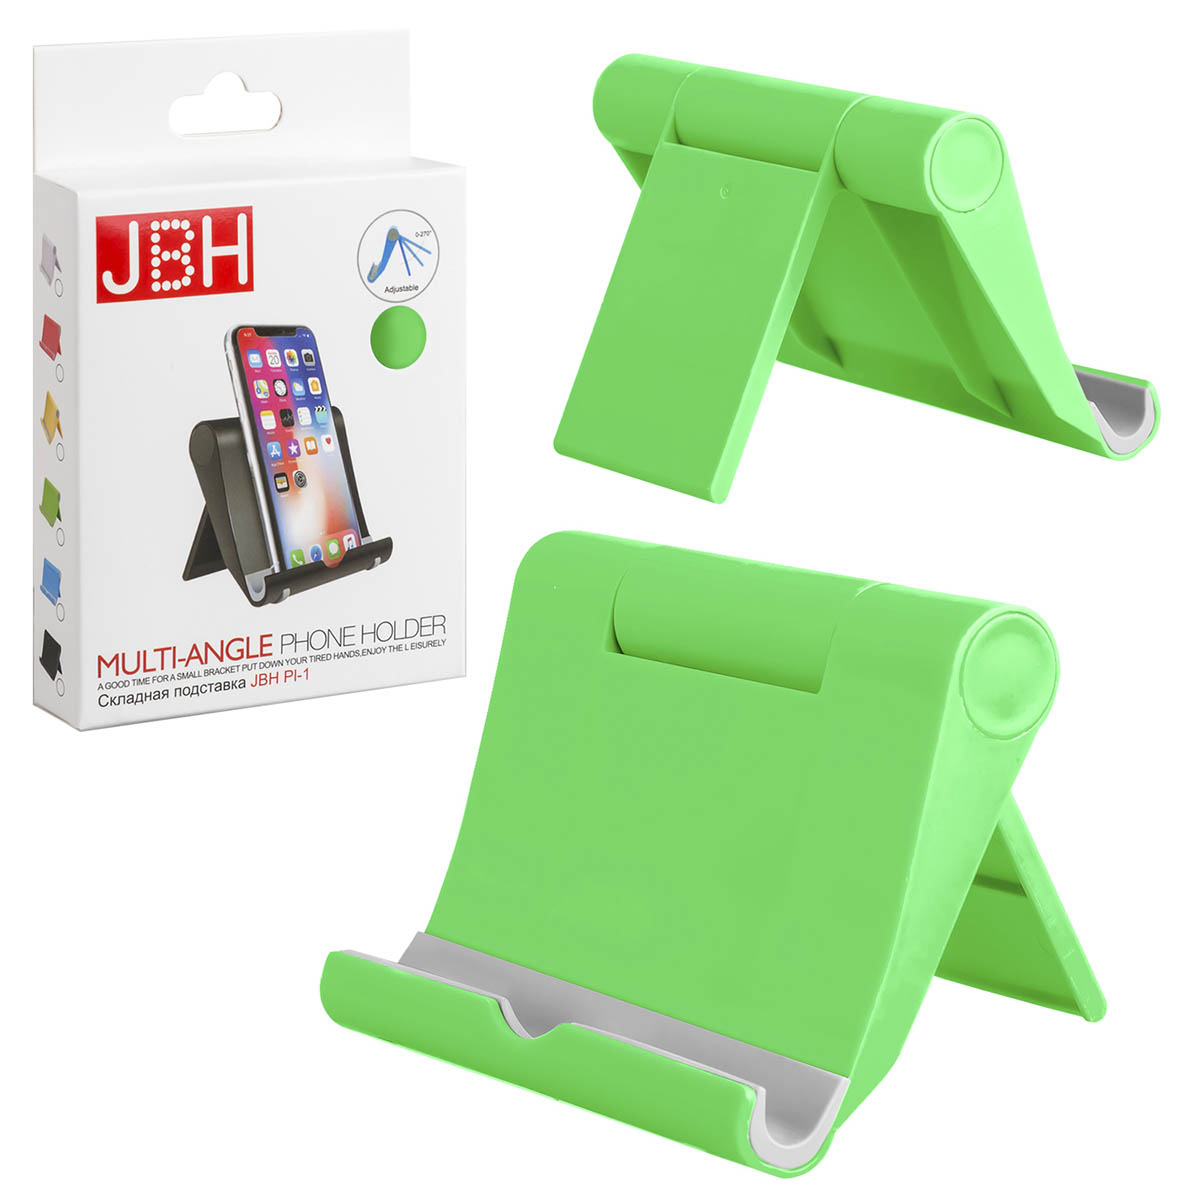 Настольная подставка, держатель JBH PL-1 для телефона, смартфона, планшета, цвет зеленый